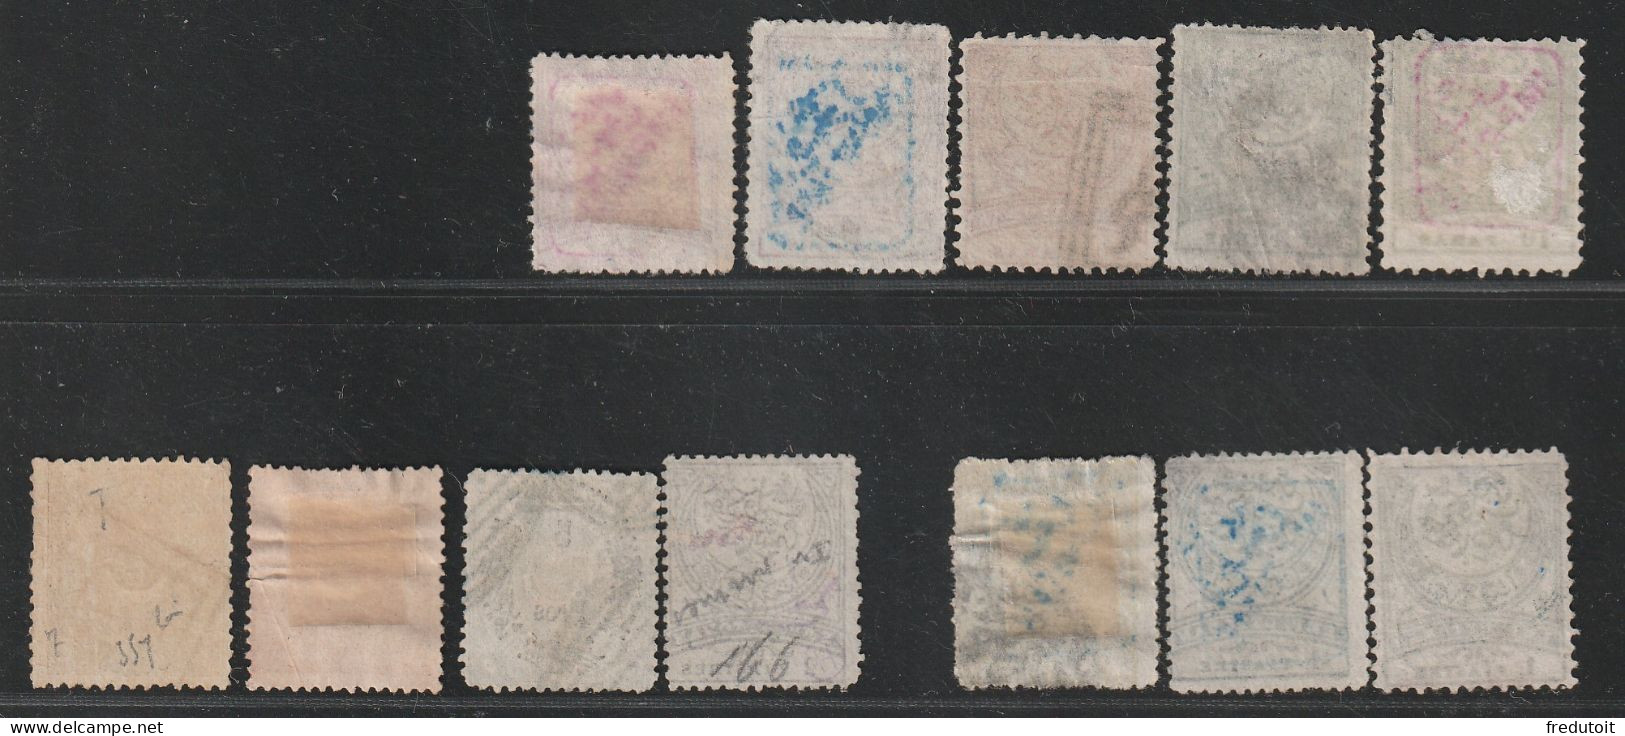 TURQUIE - Timbres Pour Journaux Et Divers - LOT De 12 Timbres (Authenticité Non Garantie) - Newspaper Stamps